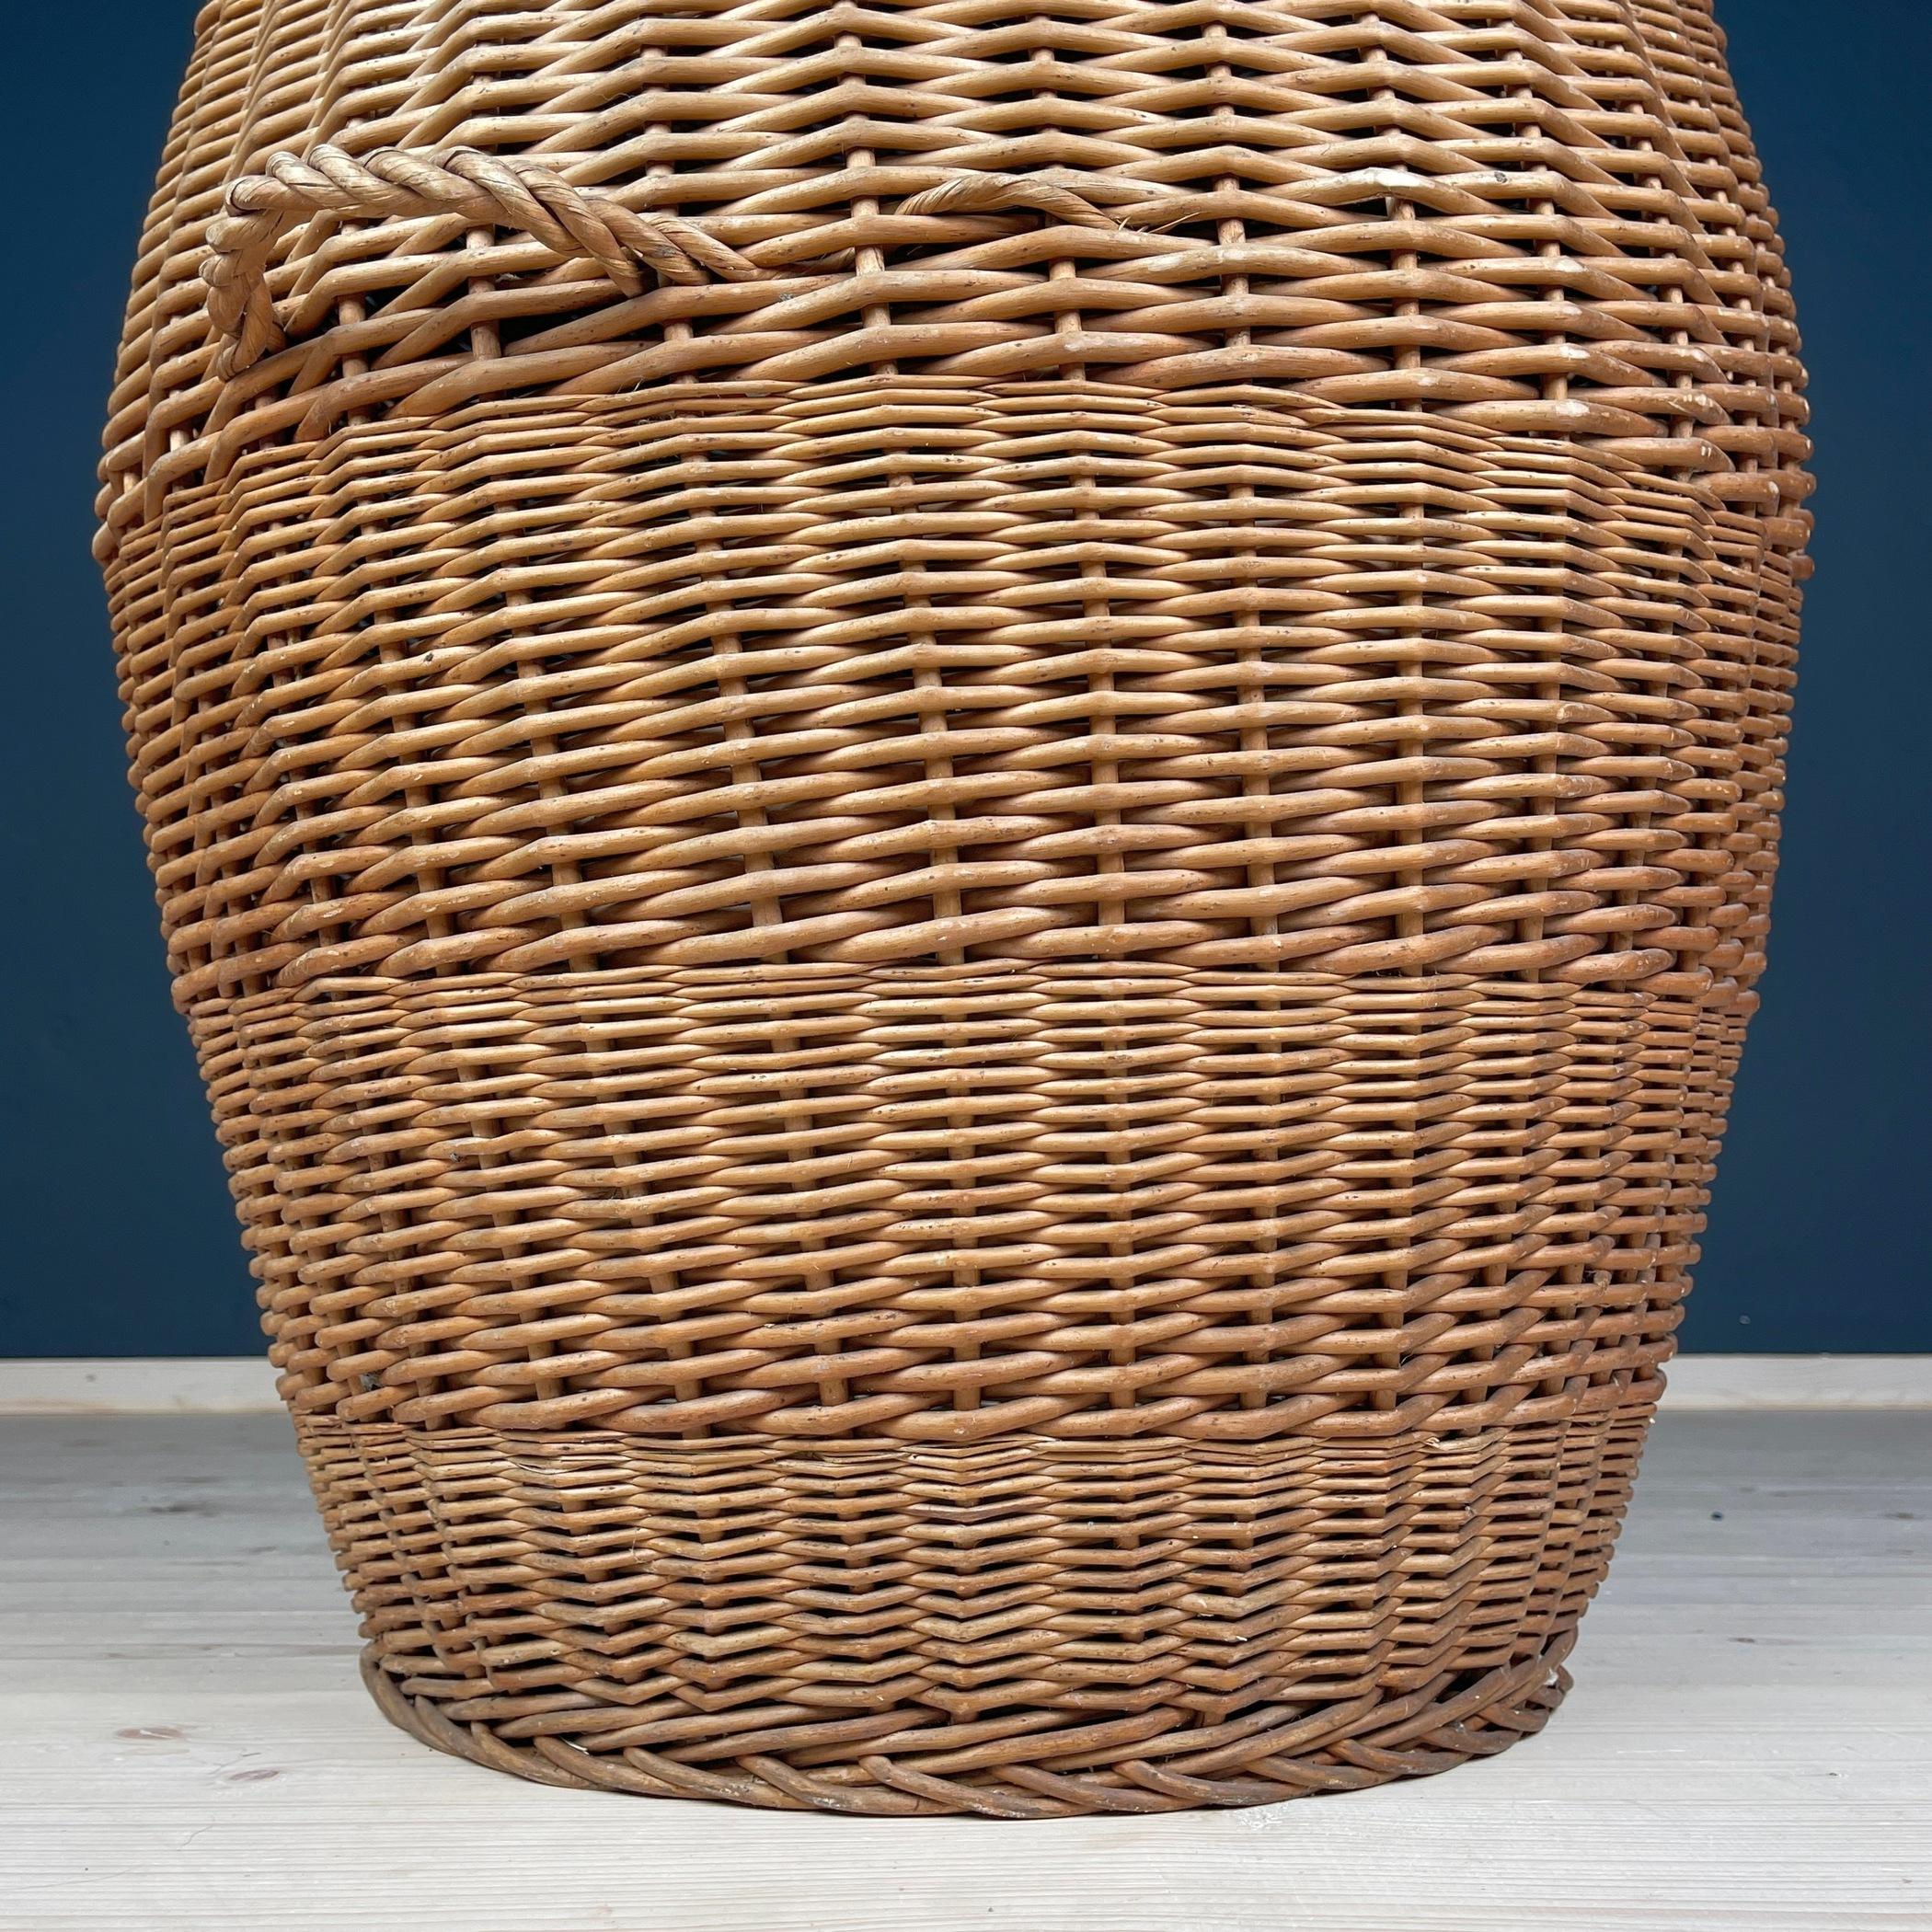 Vintage laundry basket wicker weaving Yugoslavia 1970s  For Sale 3